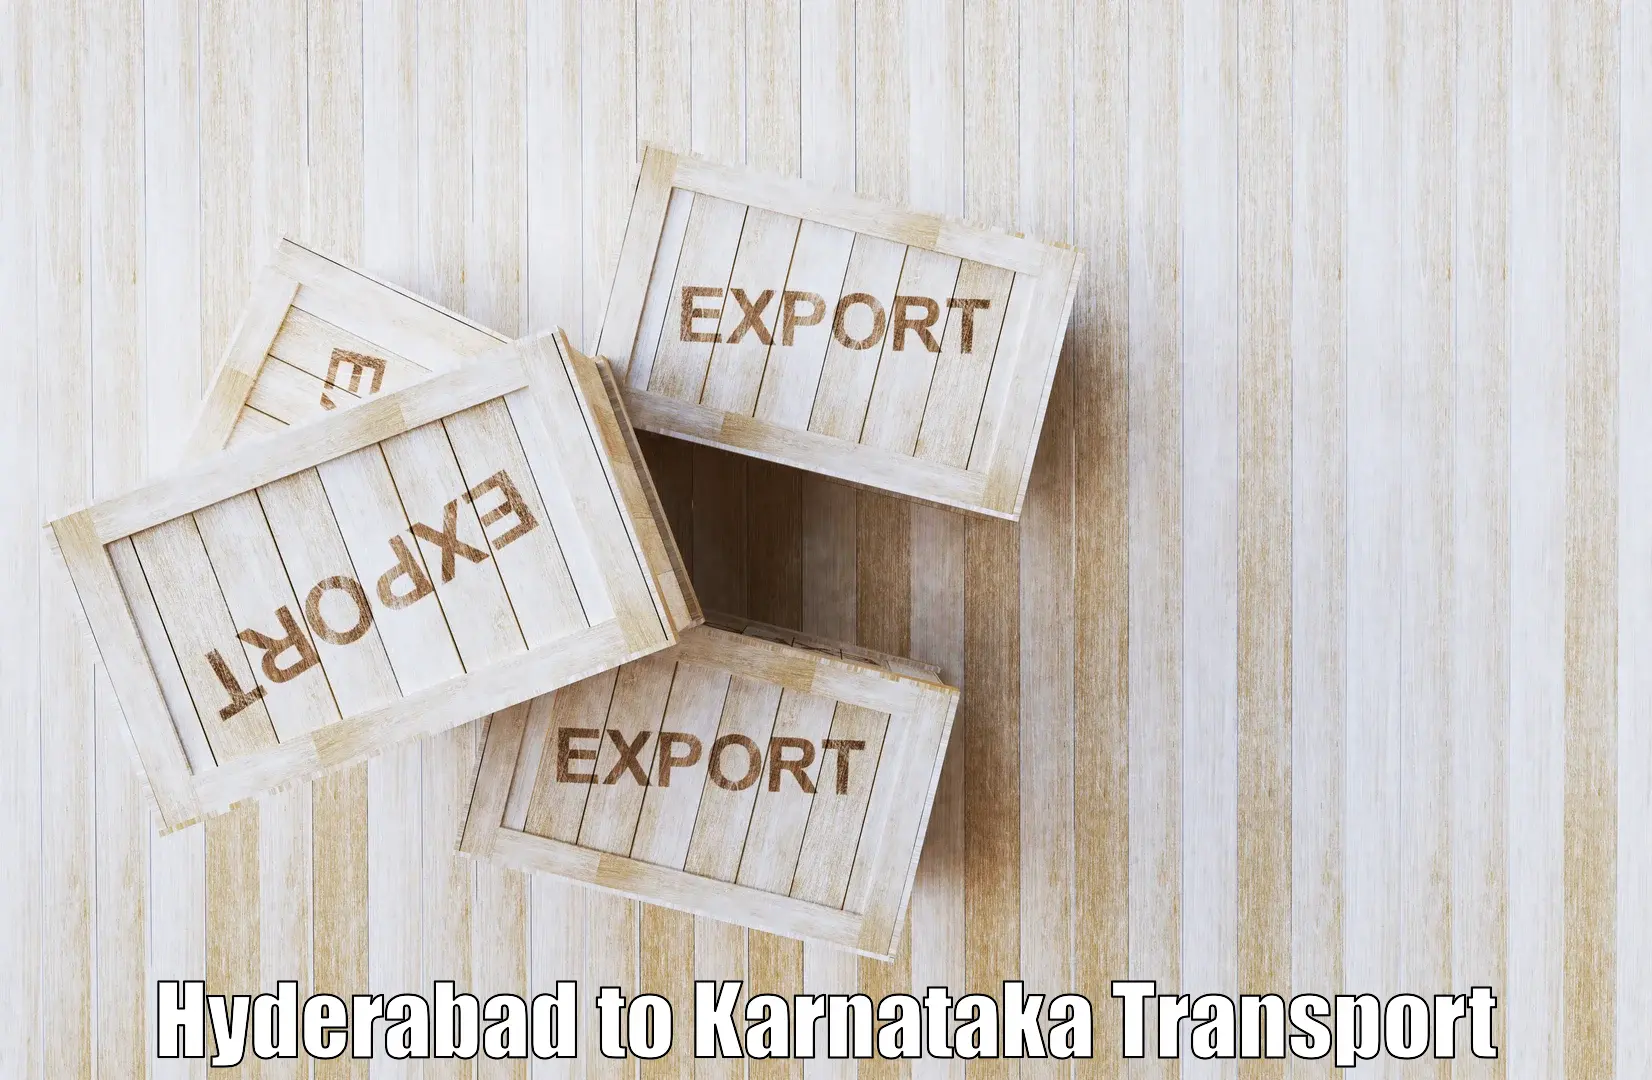 Online transport service Hyderabad to Hospet